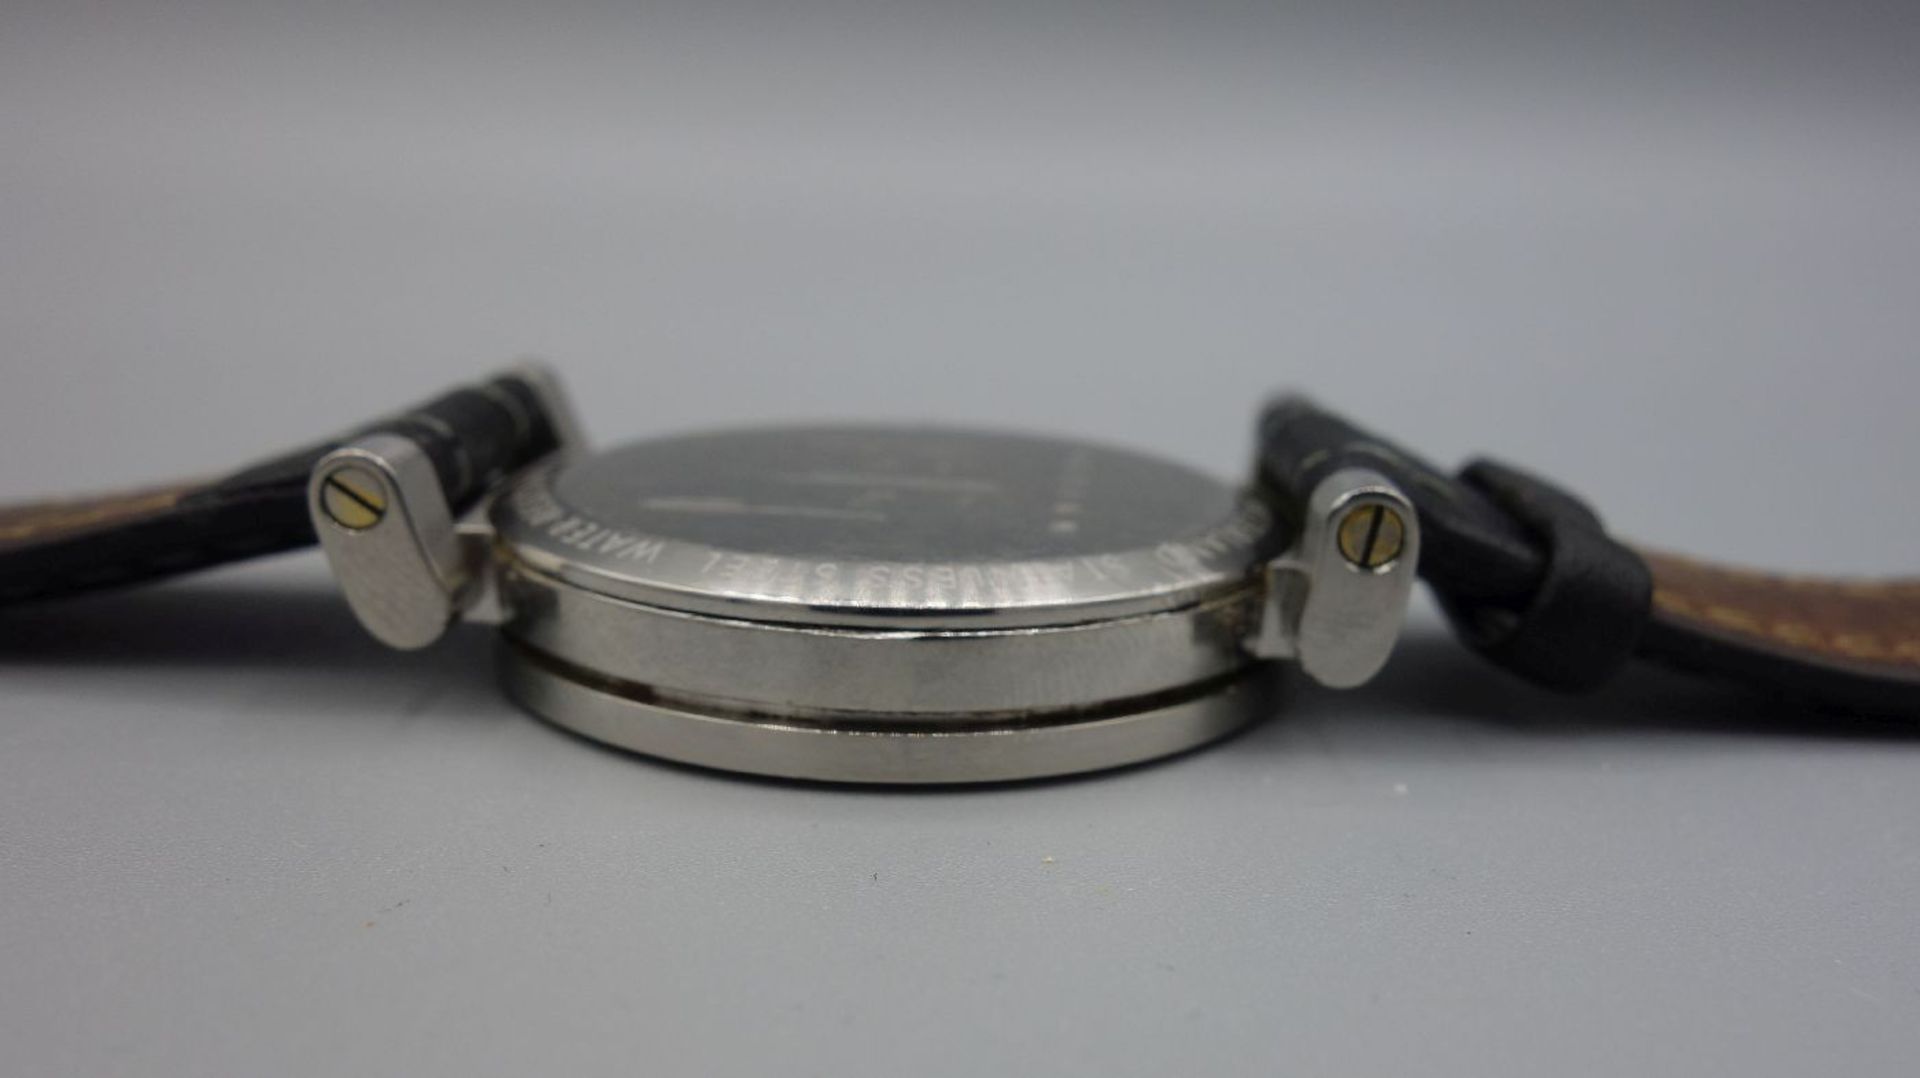 ARMBANDUHR - XEMEX OFFROAD / wristwatch, Quarz, Schweiz. Rundes Edelstahlgehäuse an schwarzem - Bild 4 aus 7